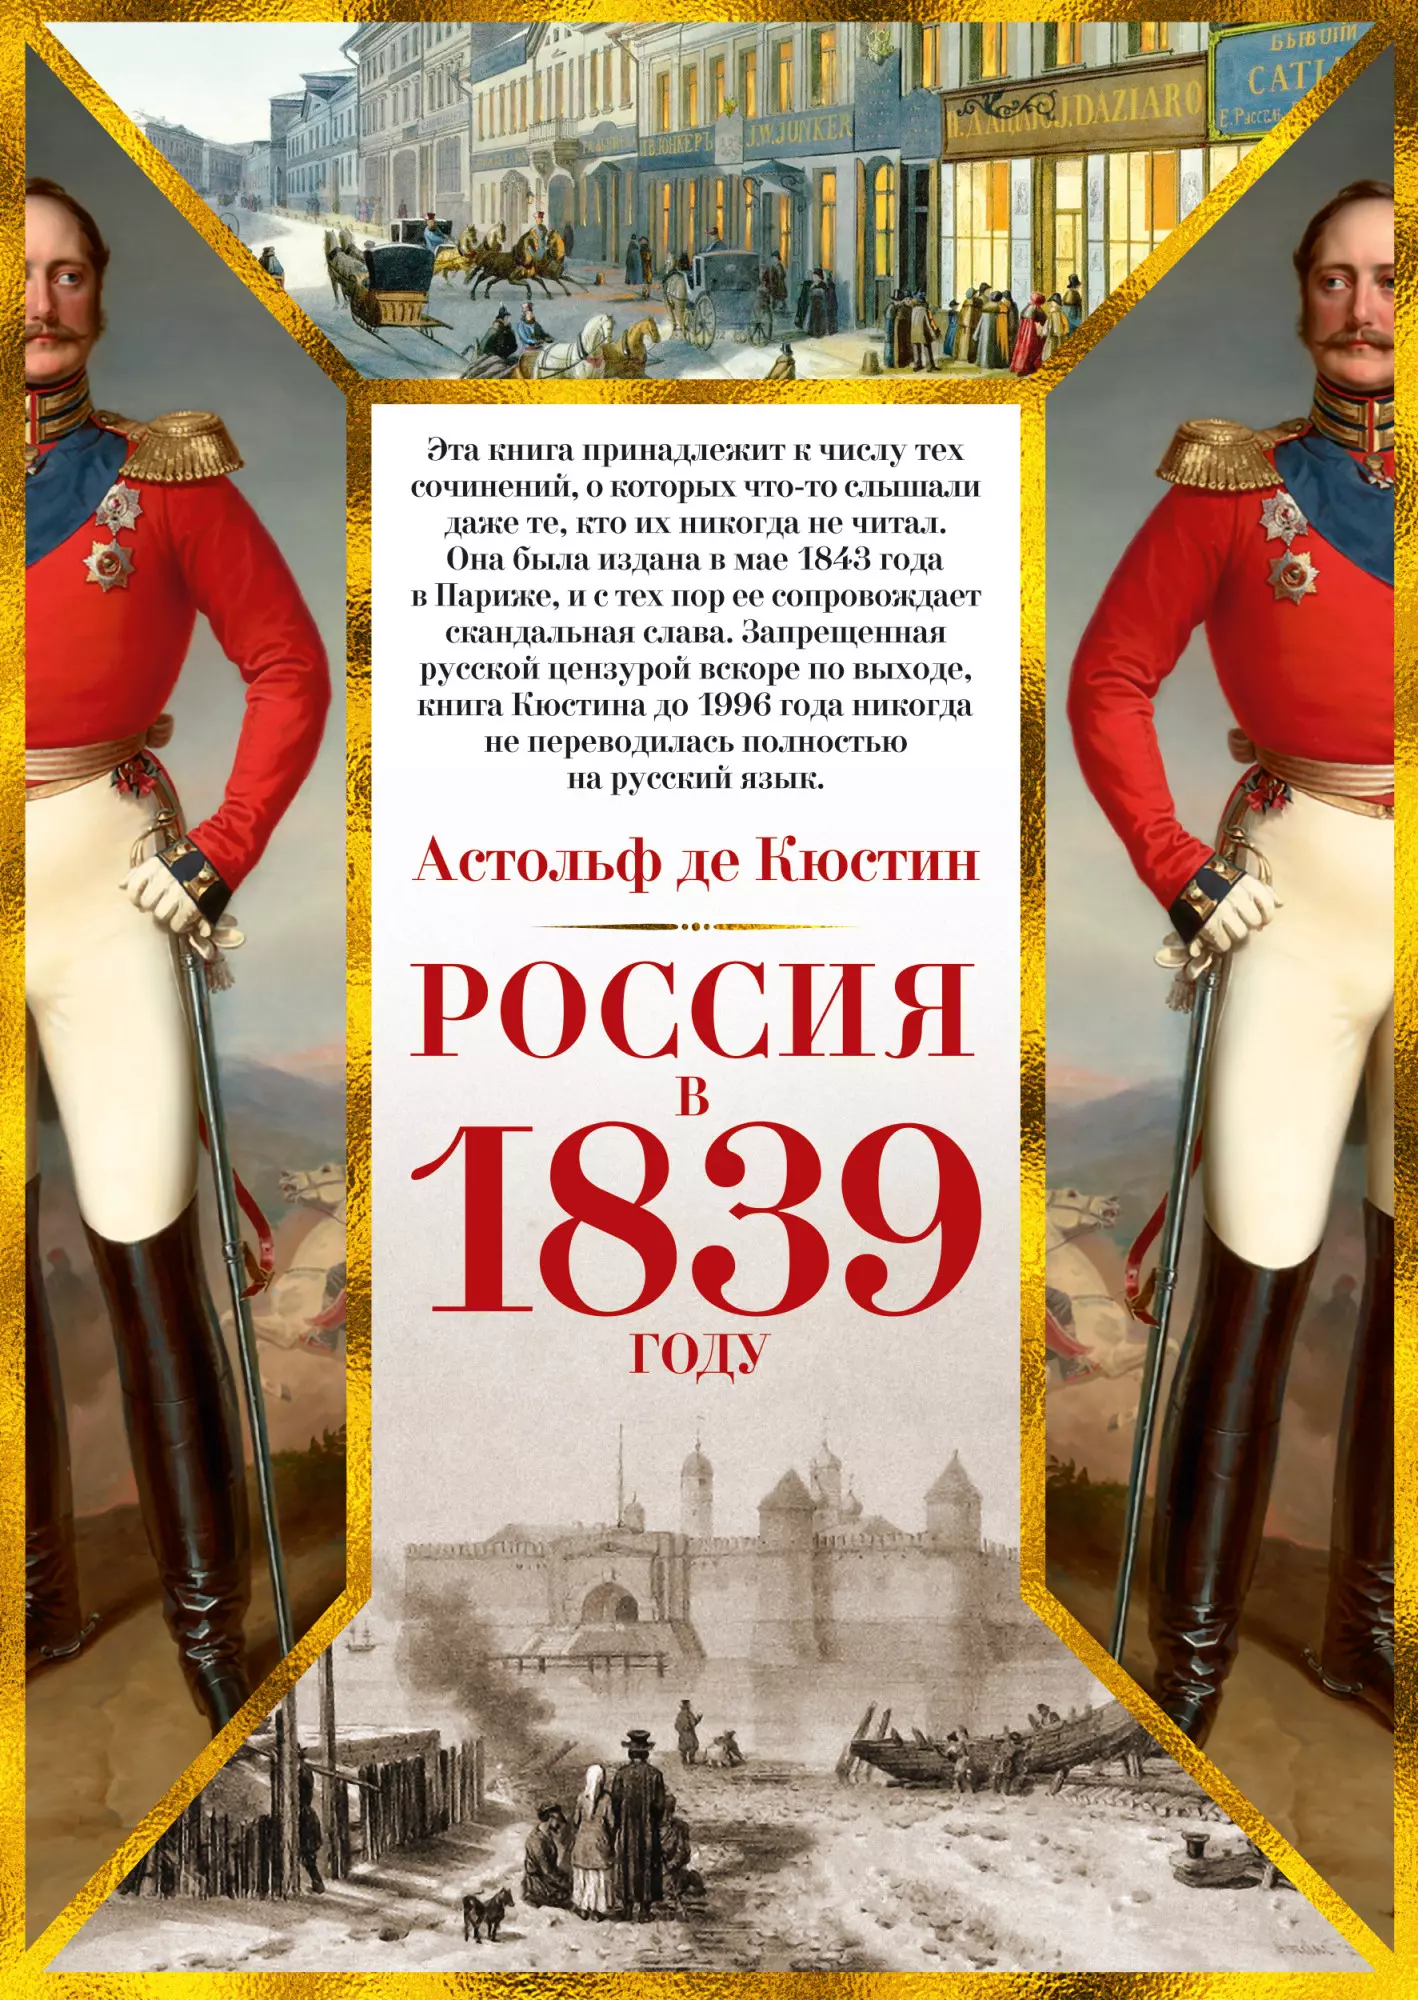 шевчук ю россия в 2050 году избежать неизбежности Россия в 1839 году